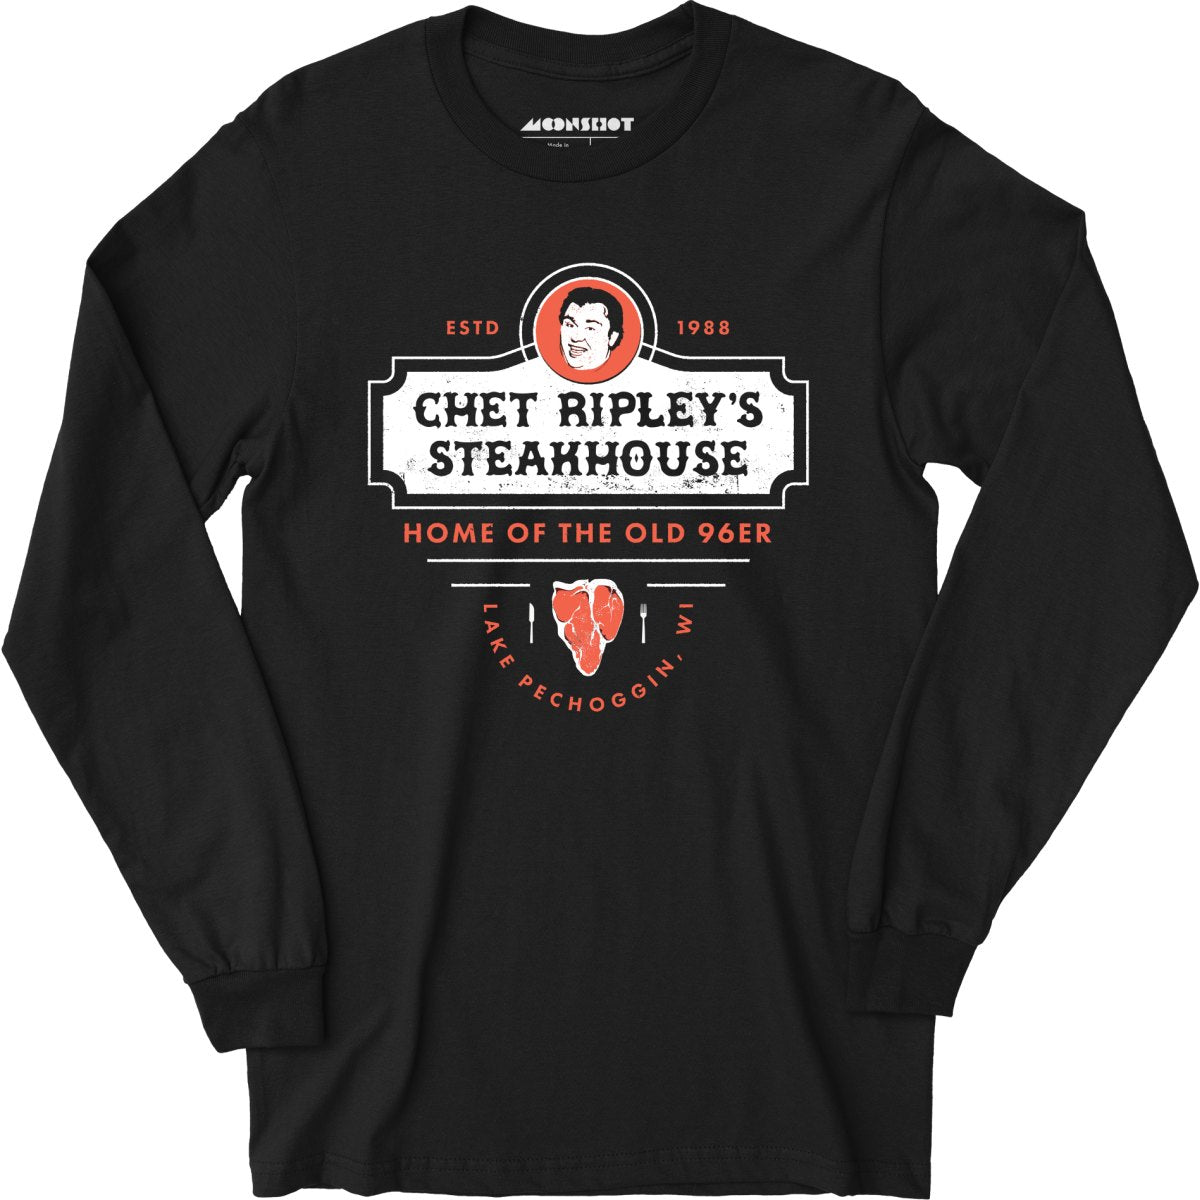 Chet Ripley's Steakhouse - Old 96er - Long Sleeve T-Shirt